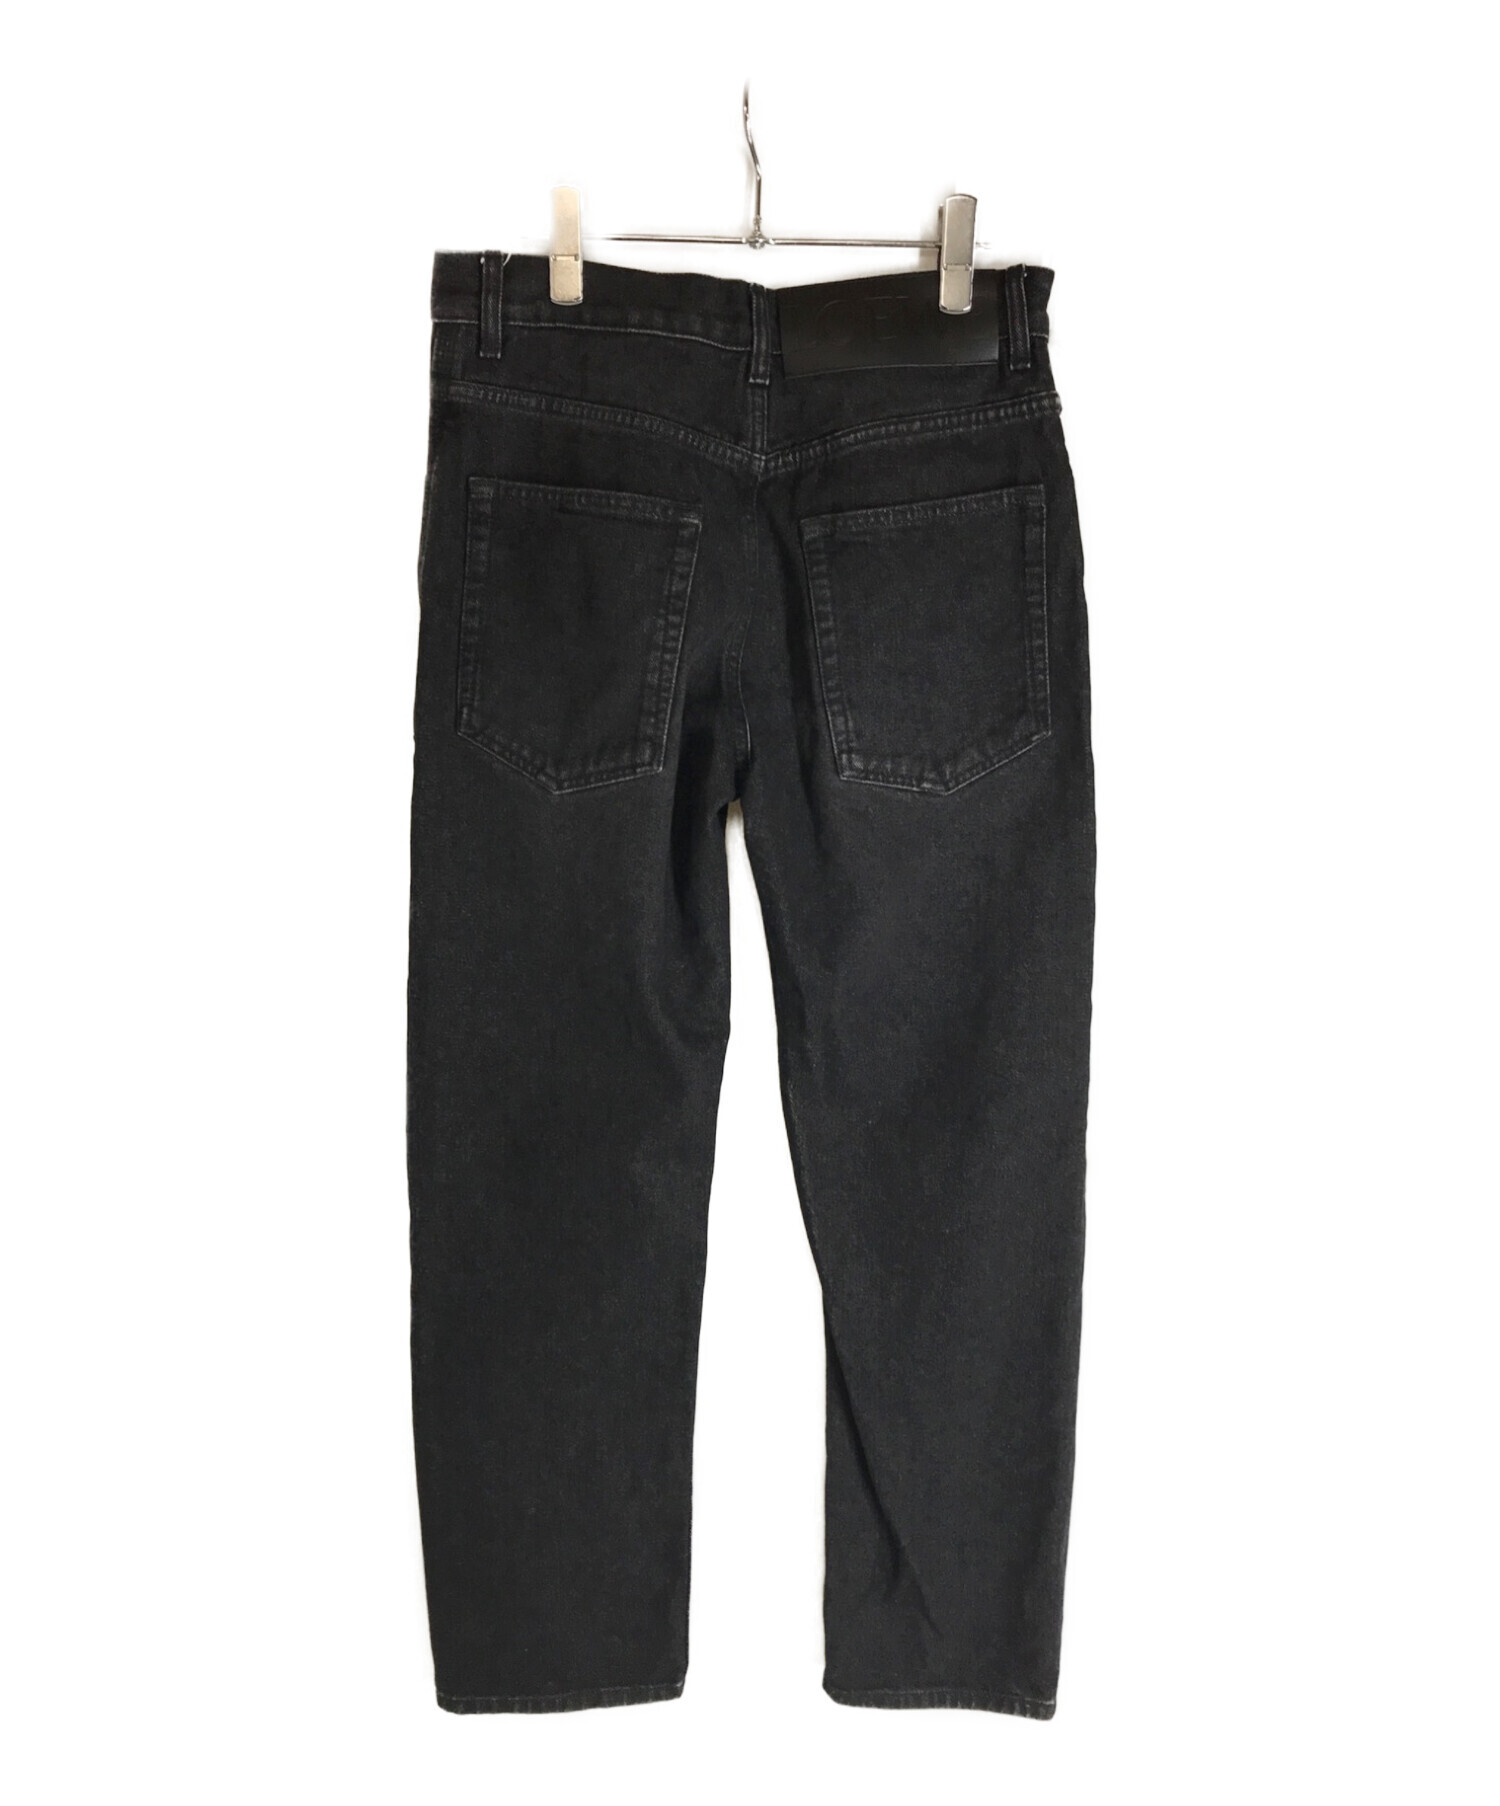 Loewe straight jeans size 44 - デニム/ジーンズ